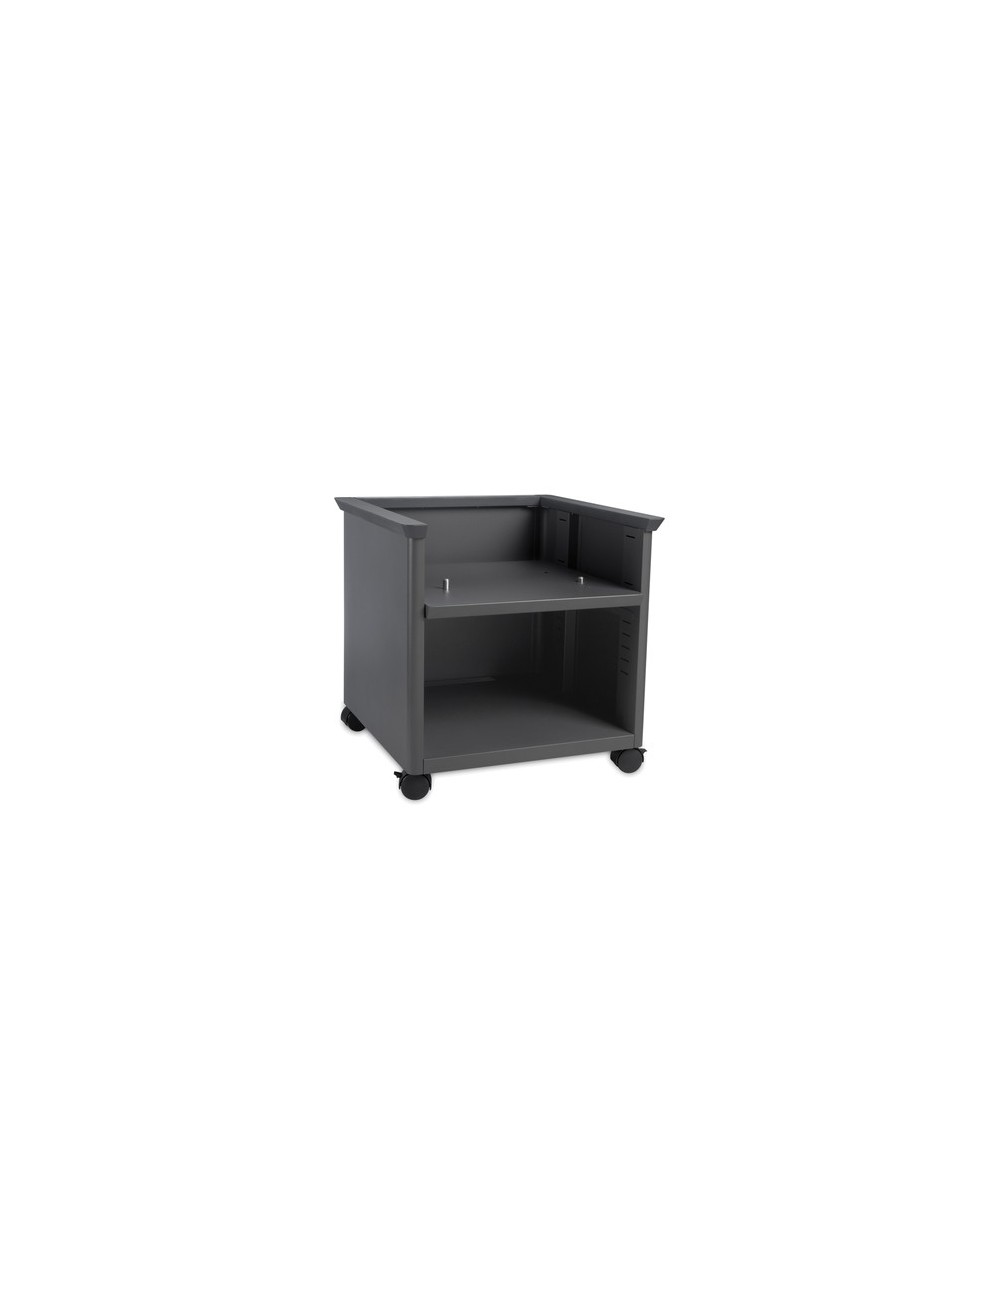 Lexmark 40C2300 mueble y soporte para impresoras Negro